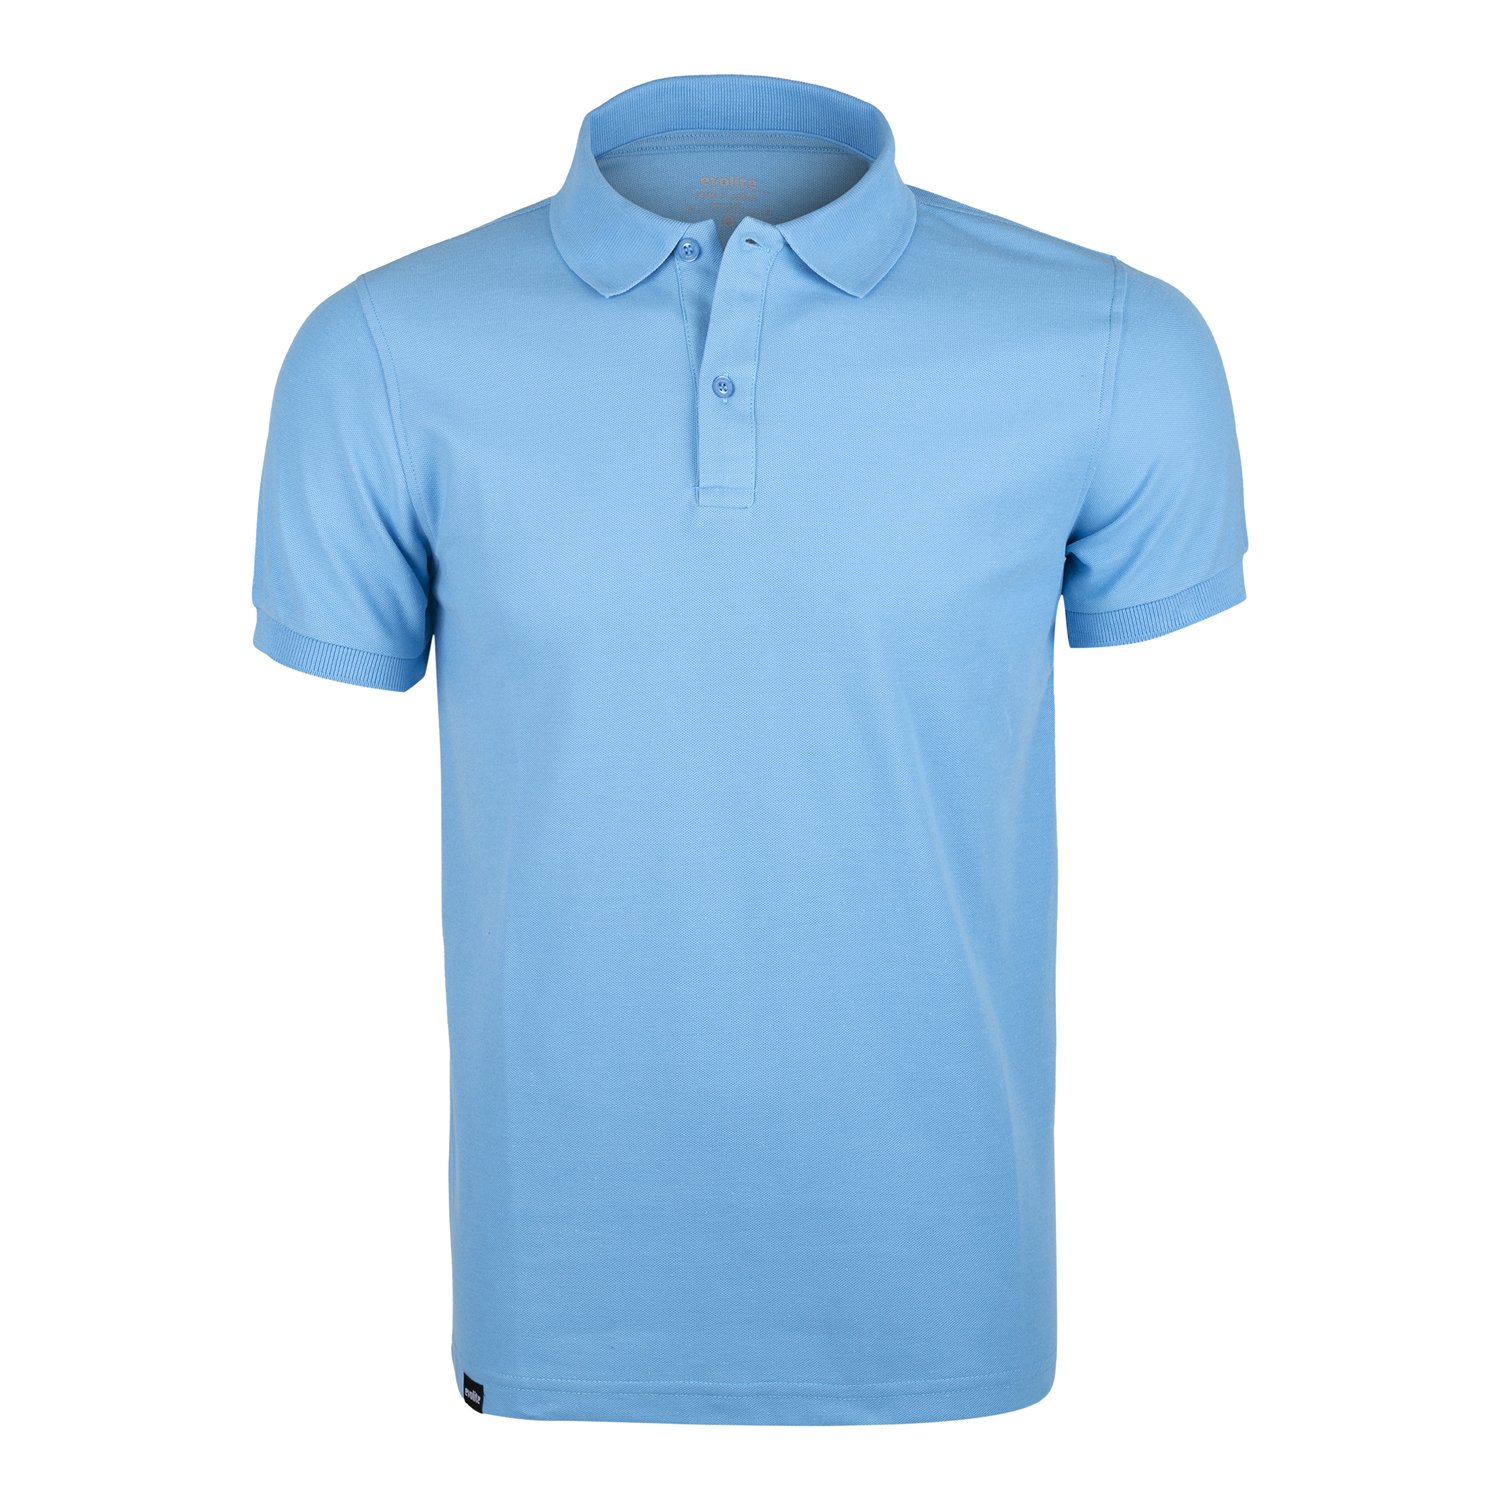 Evolite DeepRaw Bayan Polo T-Shirt-Mavi